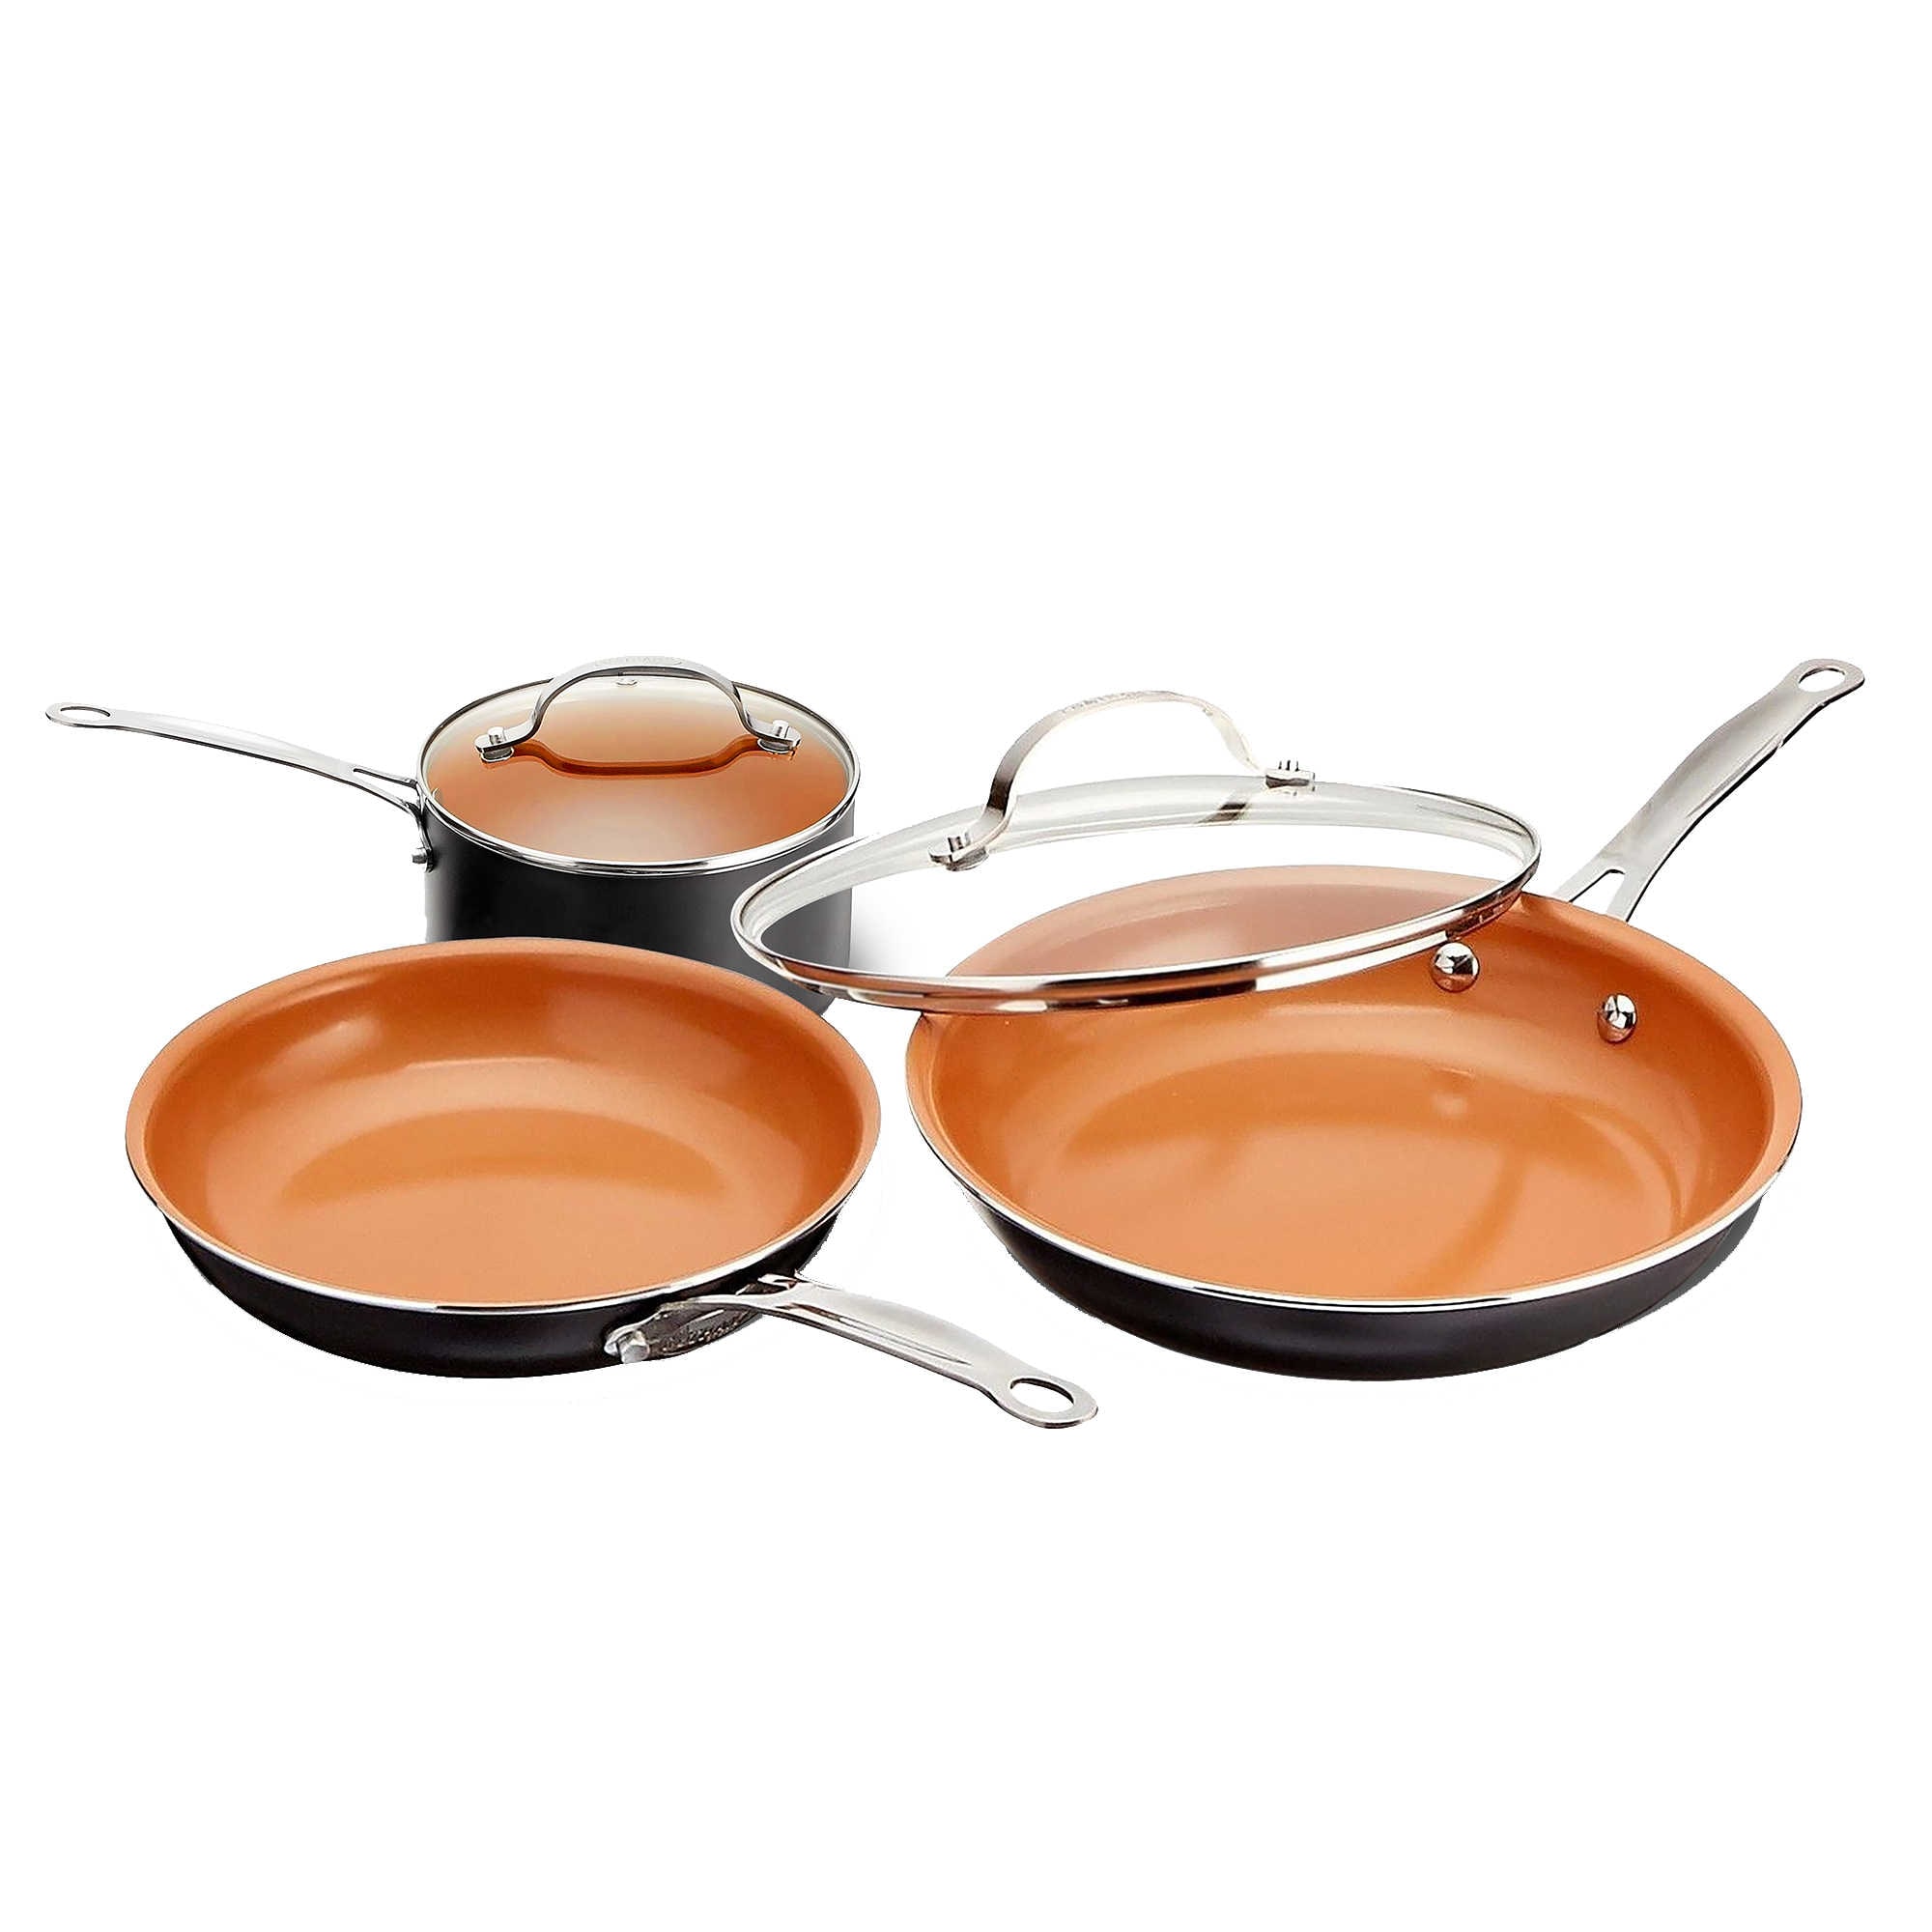 Gotham Steel - Stackmaster 5-Piece Cookware Set - Copper